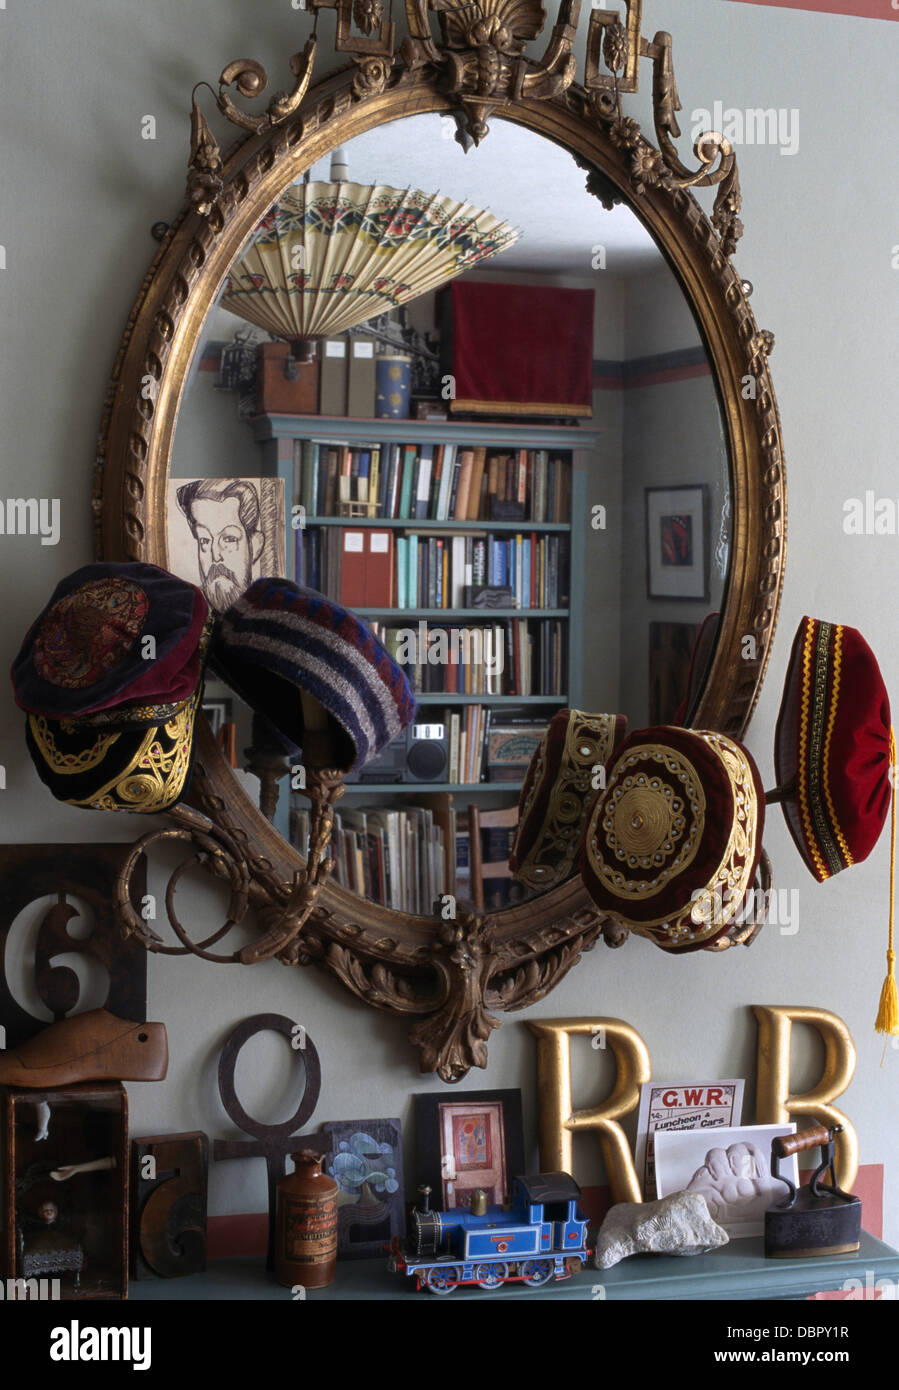 Close-up of antique girandole miroir avec une collection de chapeaux Taqiyah musulmanes au-dessus de la tablette avec des lettres en bois peint. Banque D'Images